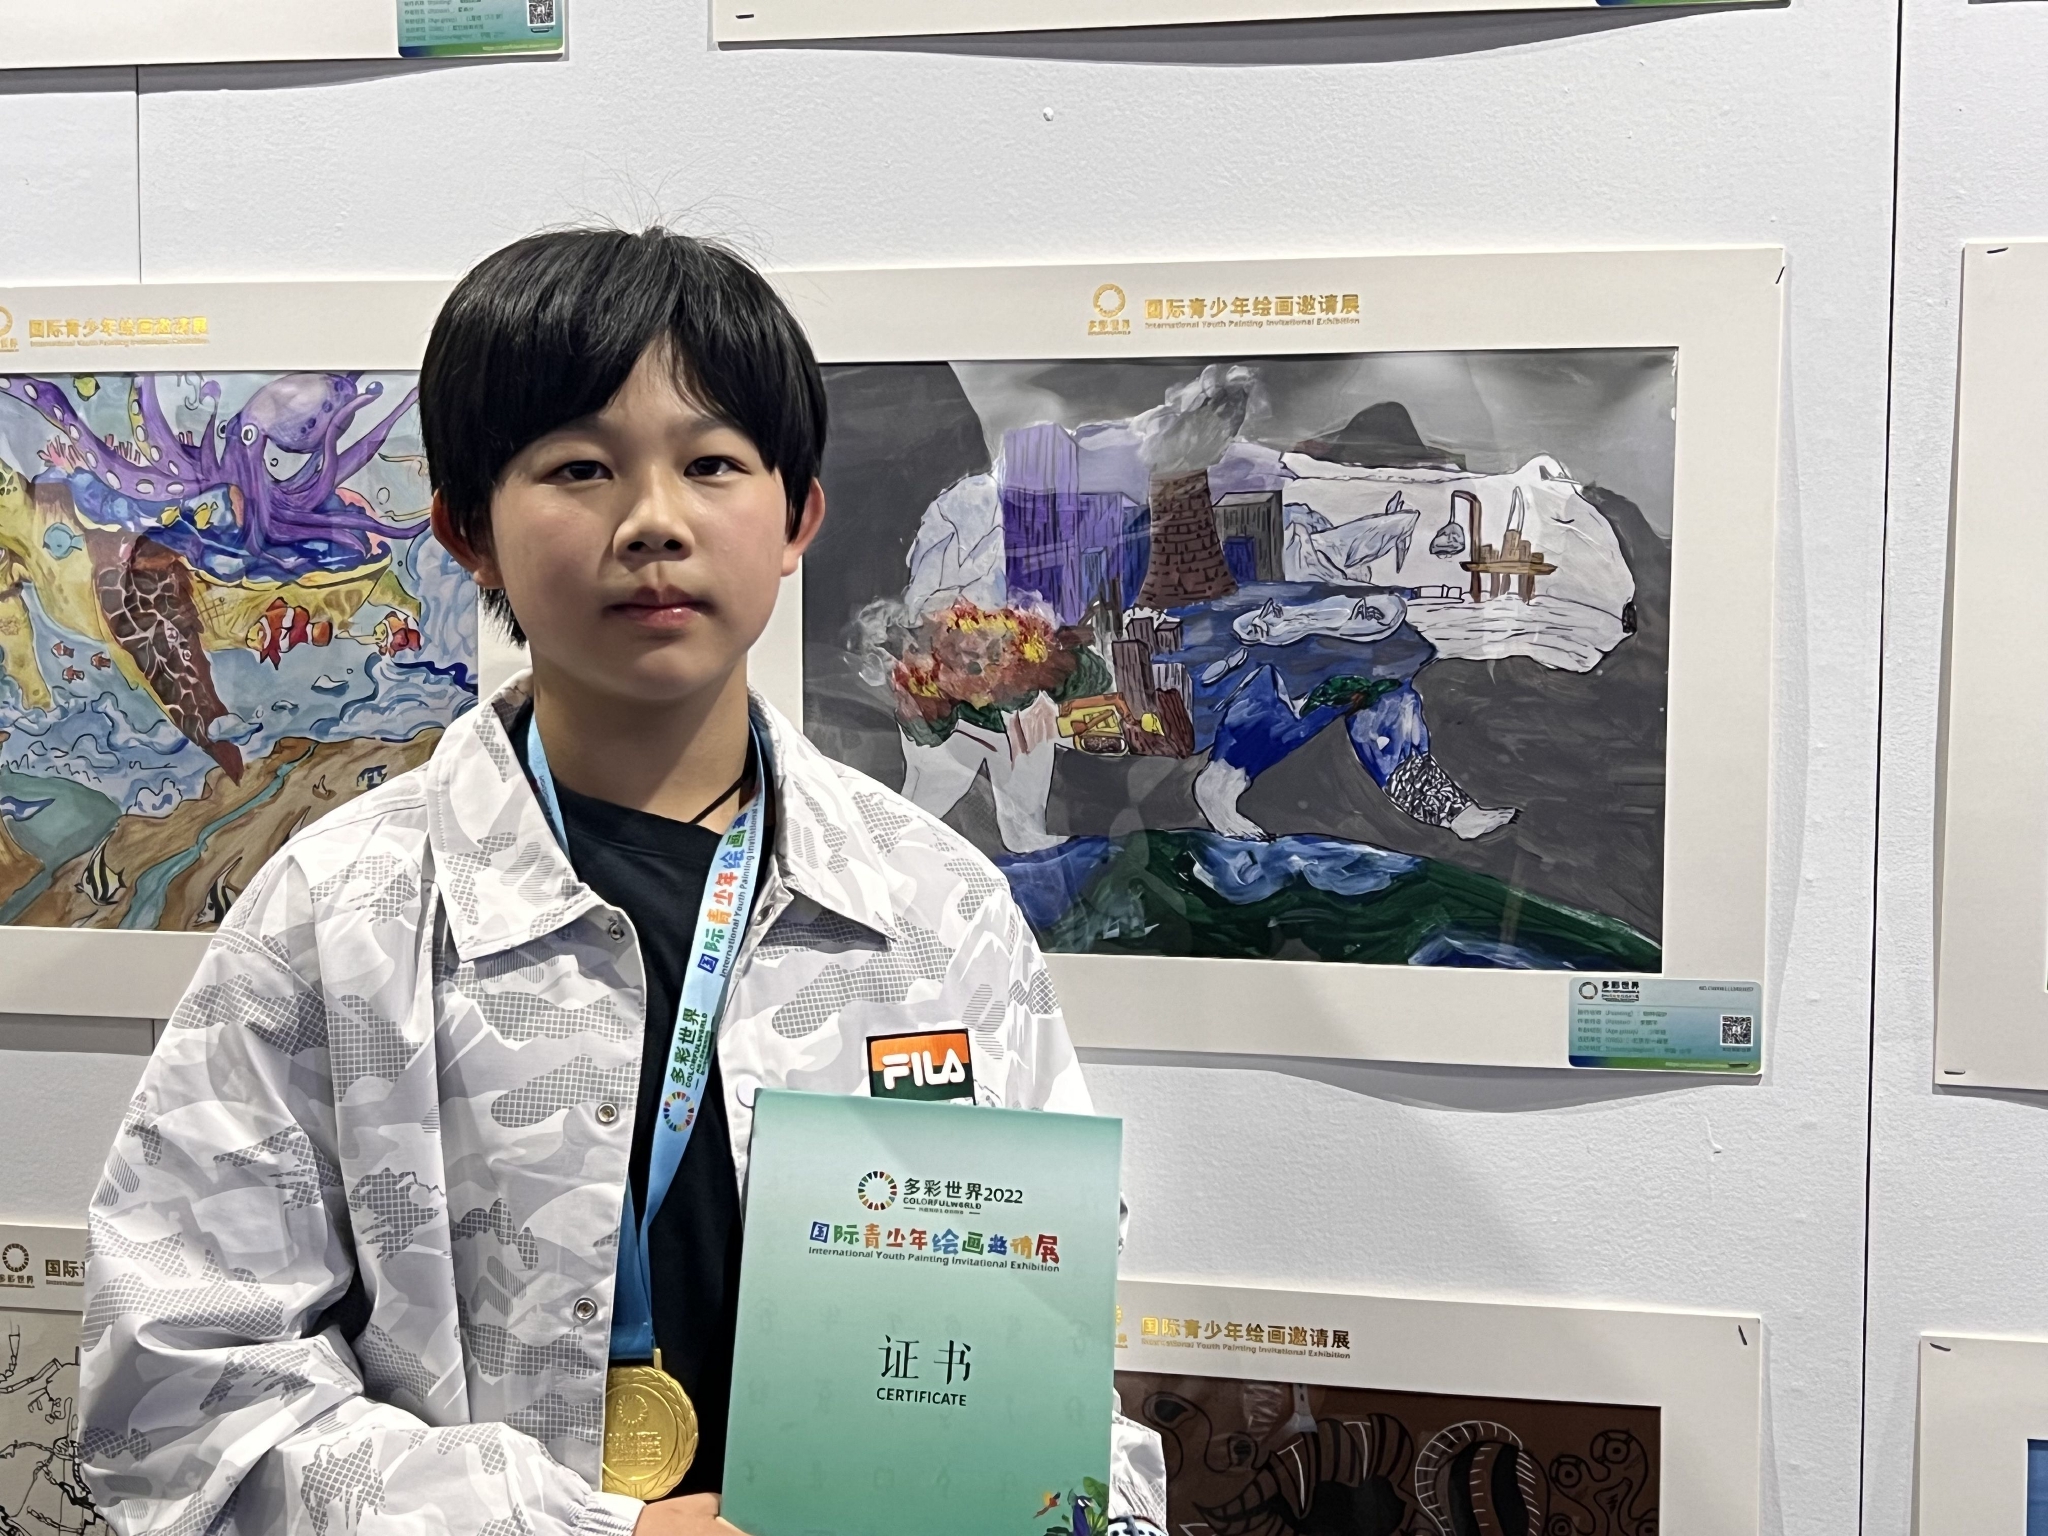 12岁的李鹏宇的作品《物种保护》在绘画展中获得一等奖。新京报记者 陈璐 摄